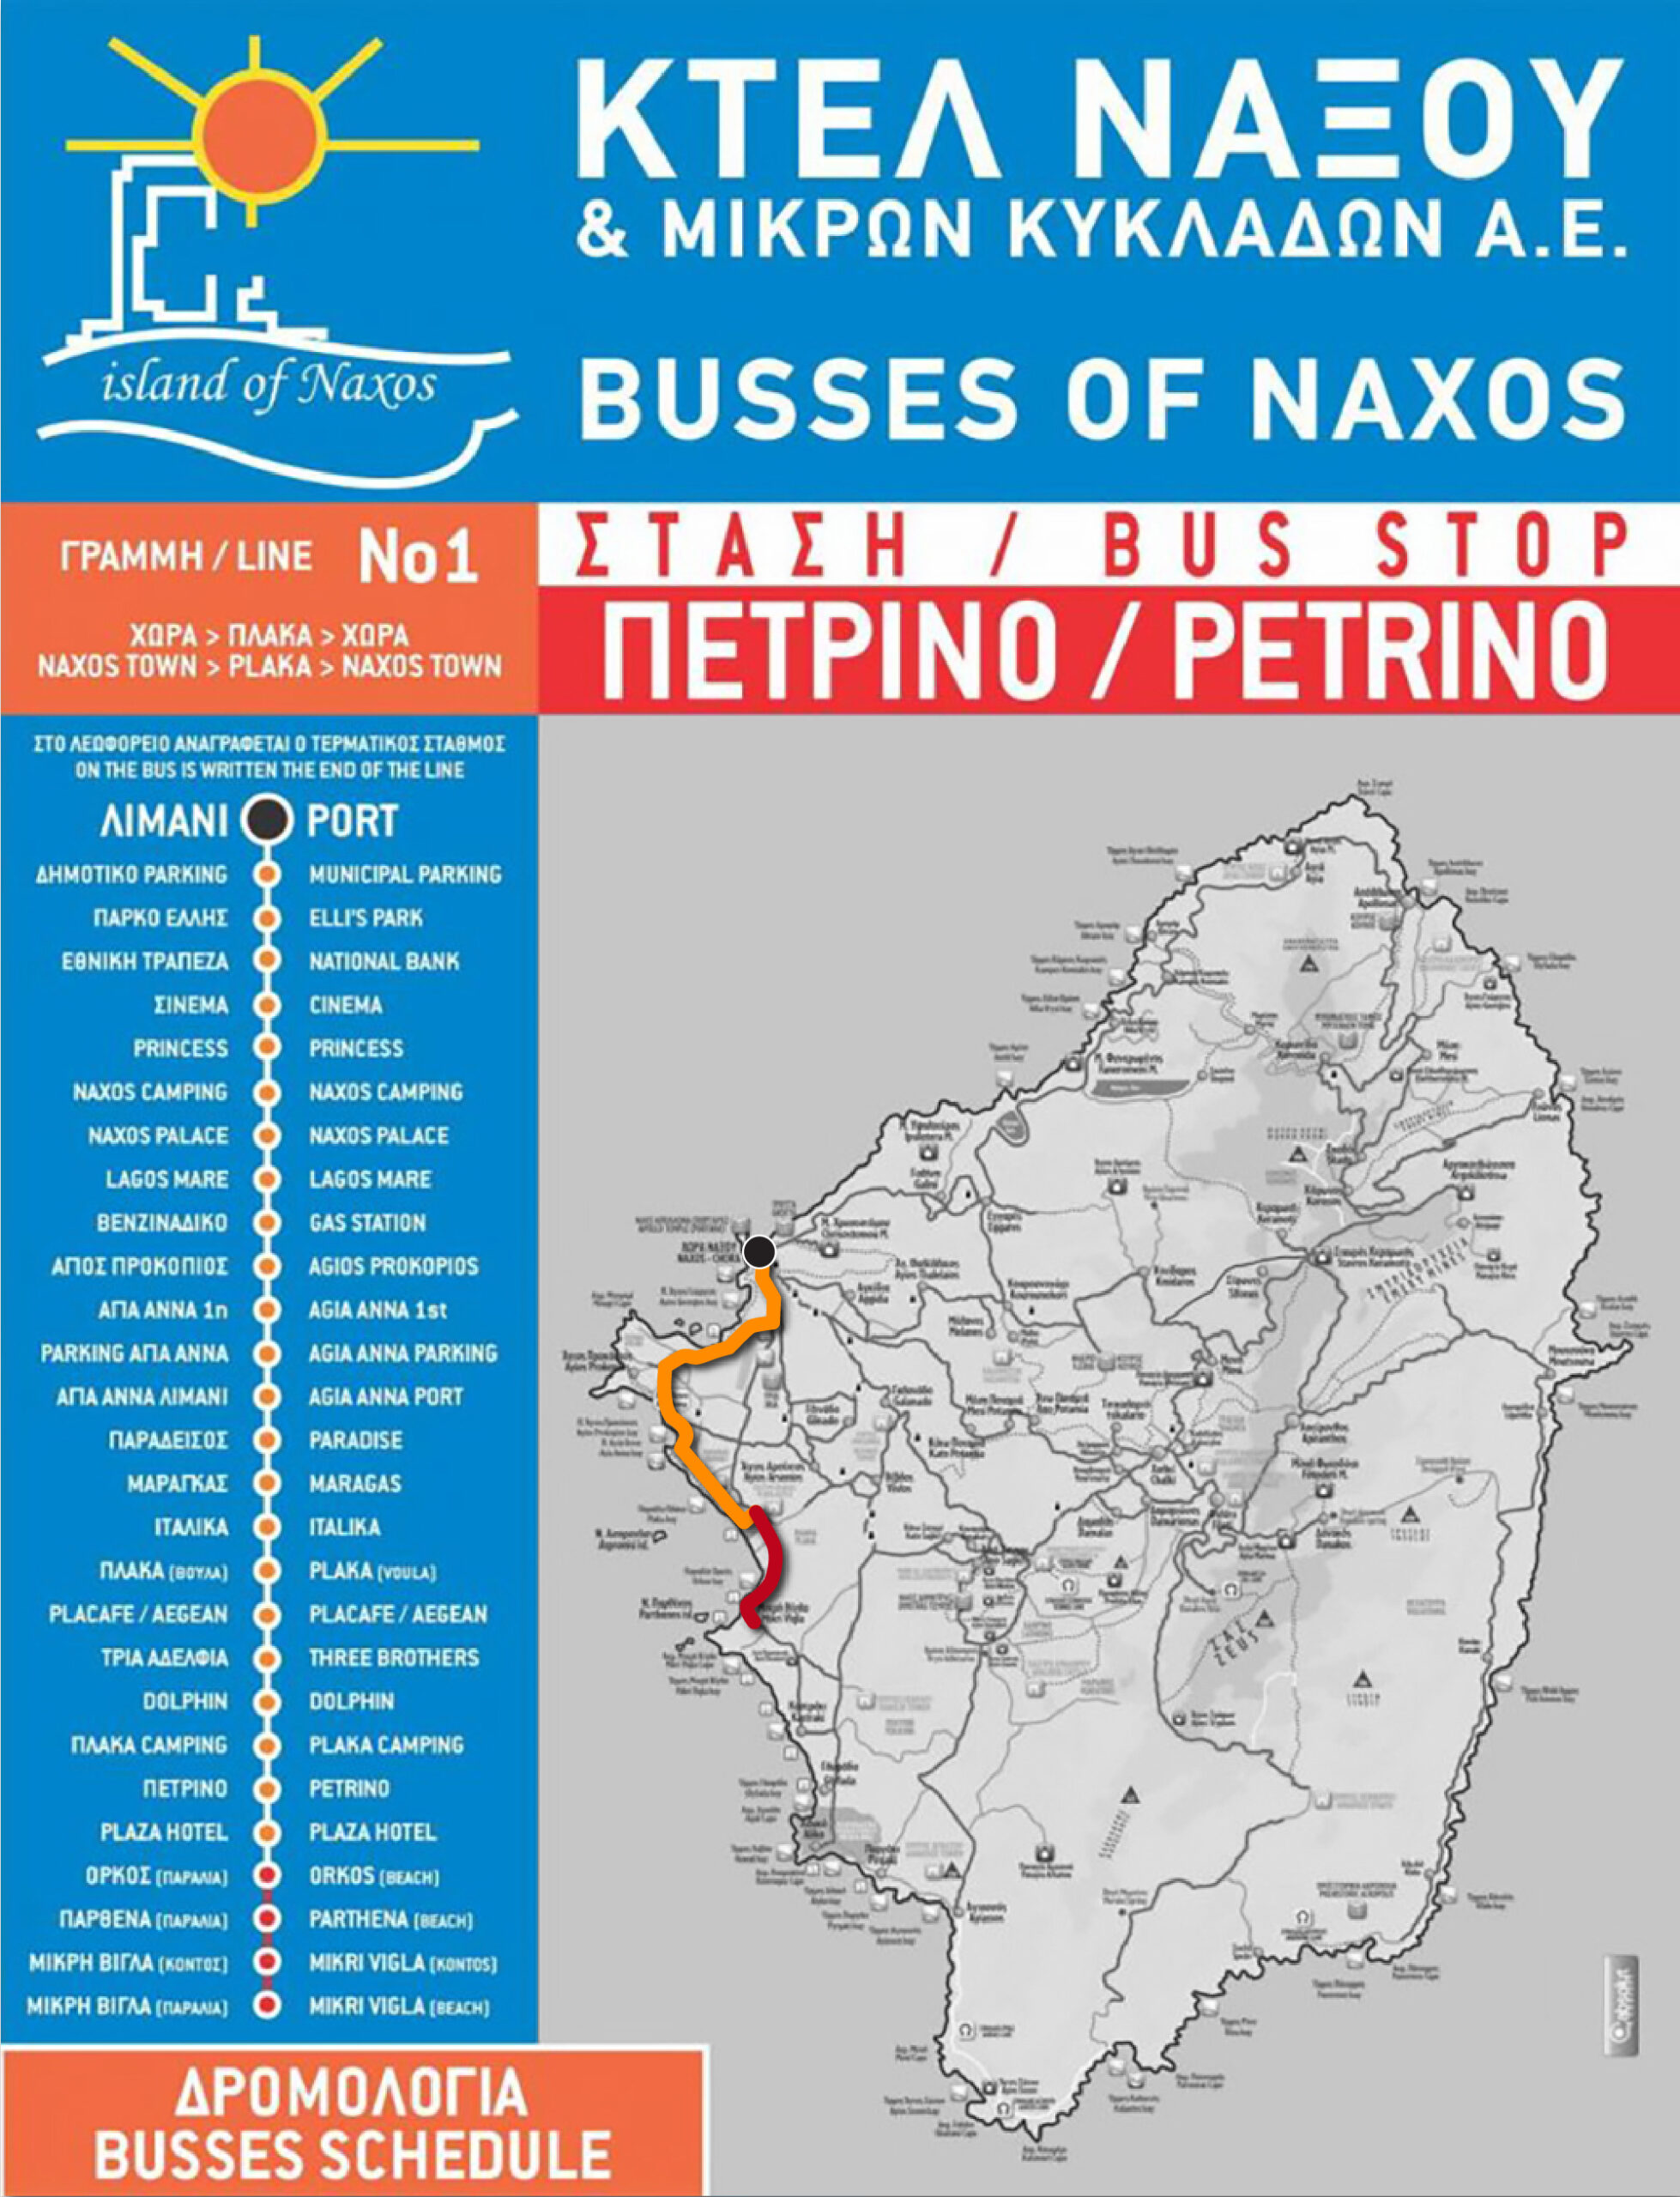 Naxos bus route #1.